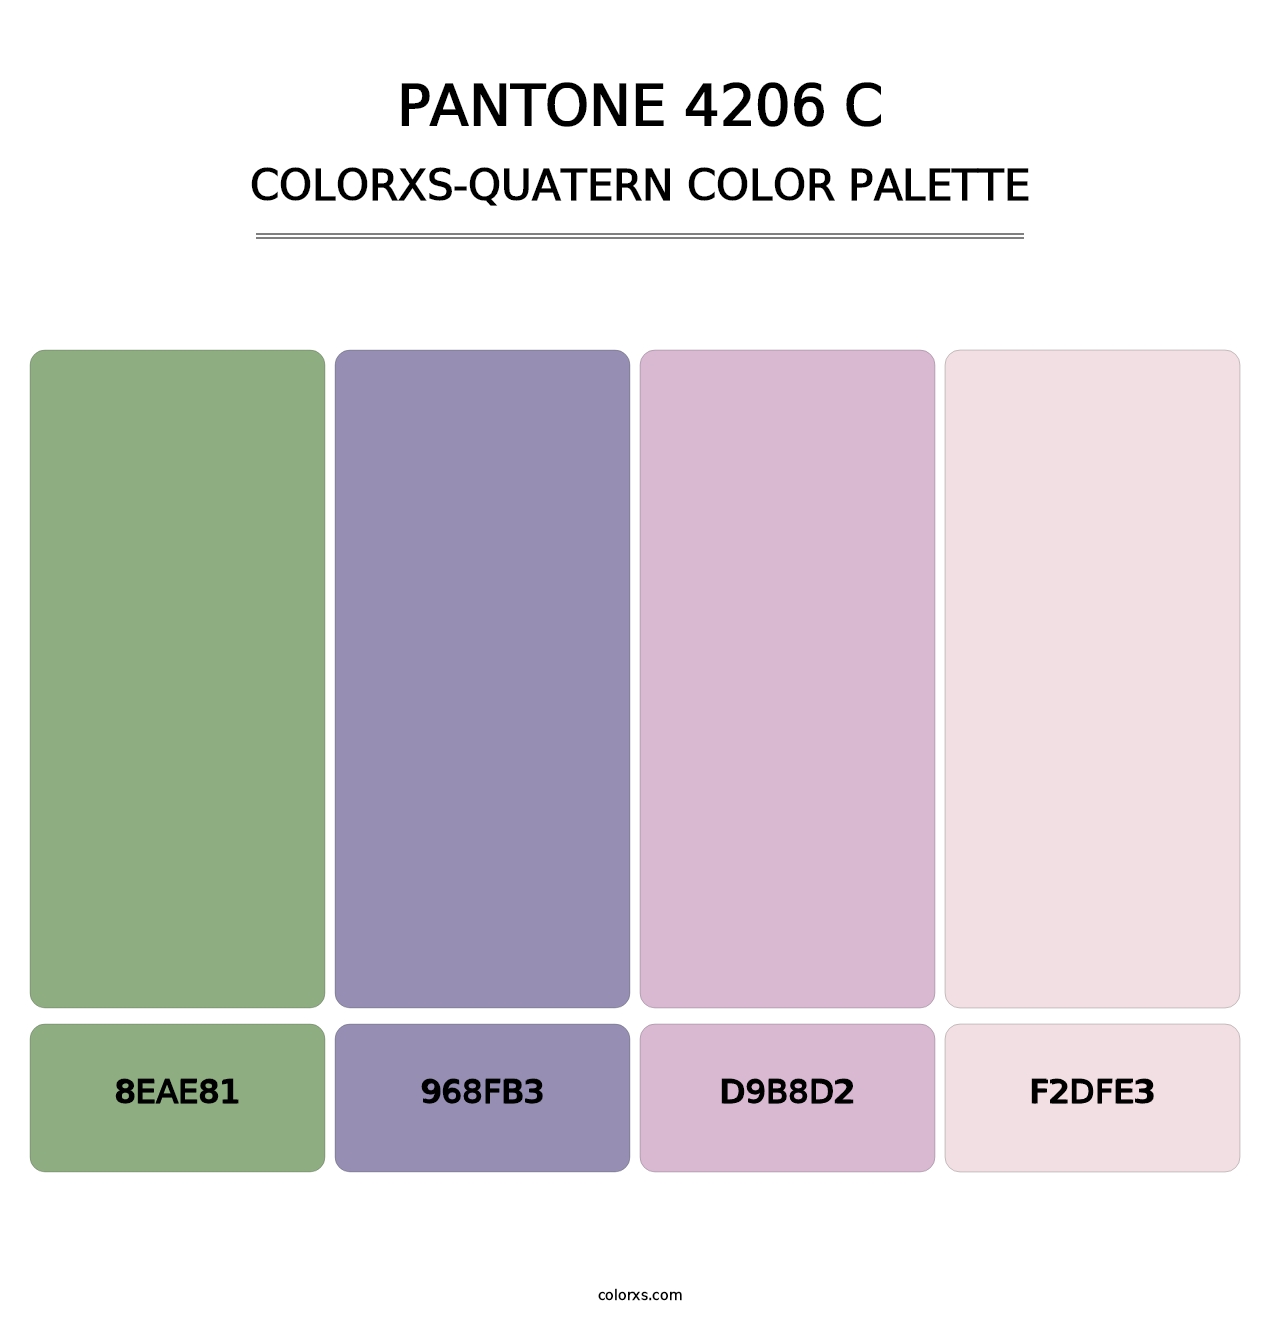 PANTONE 4206 C - Colorxs Quatern Palette